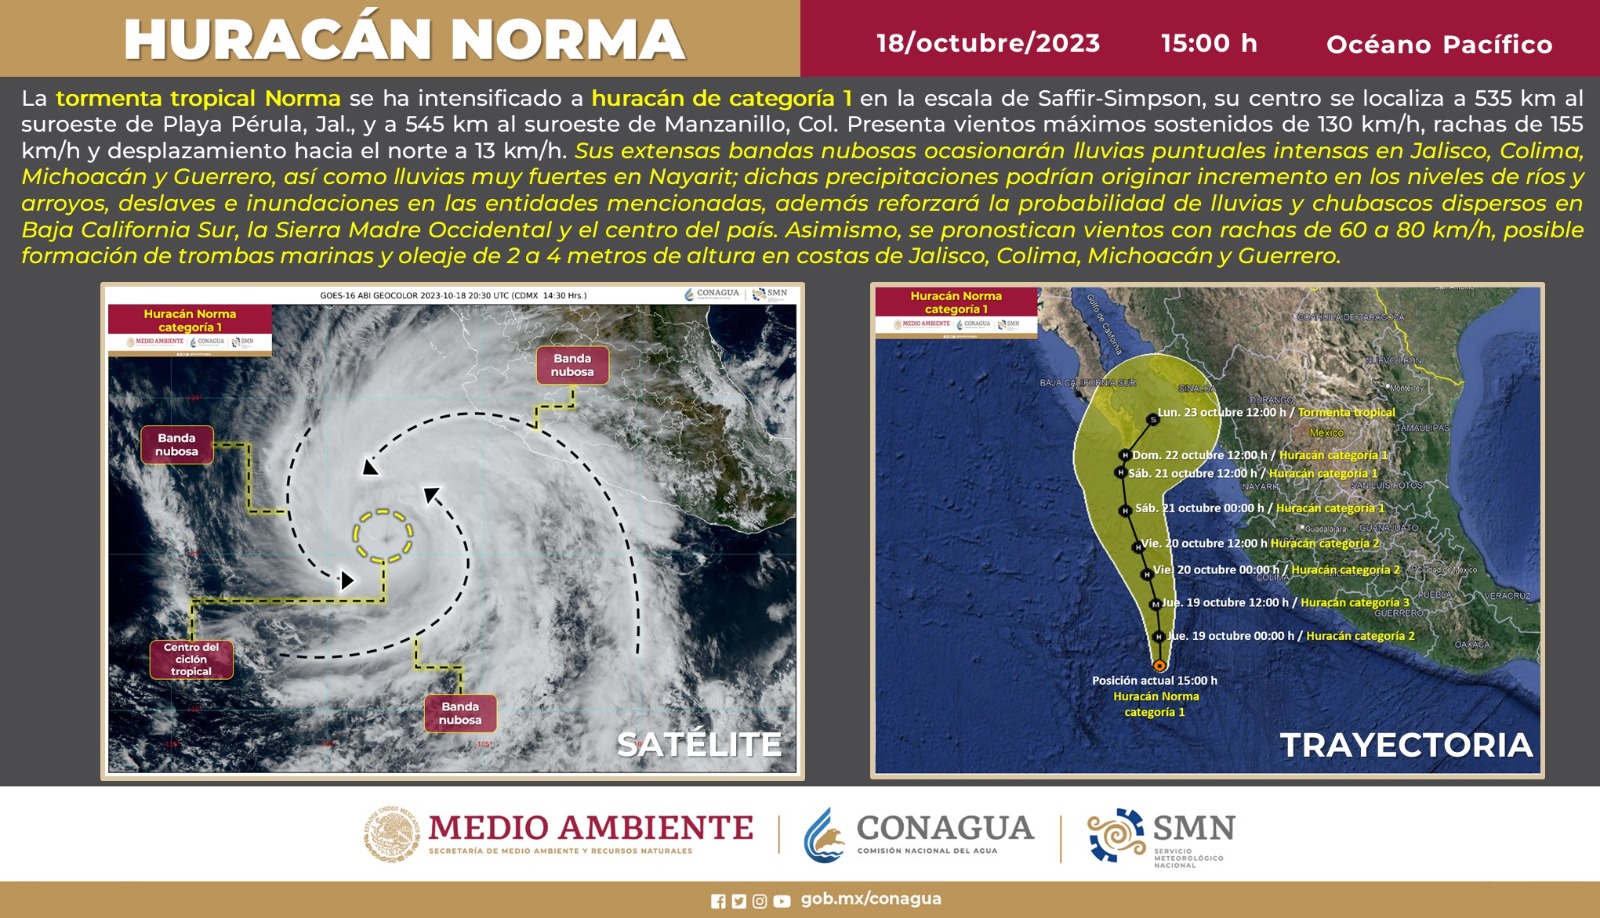 Trayectoria del huracán "Norma" en el Océano Pacífico